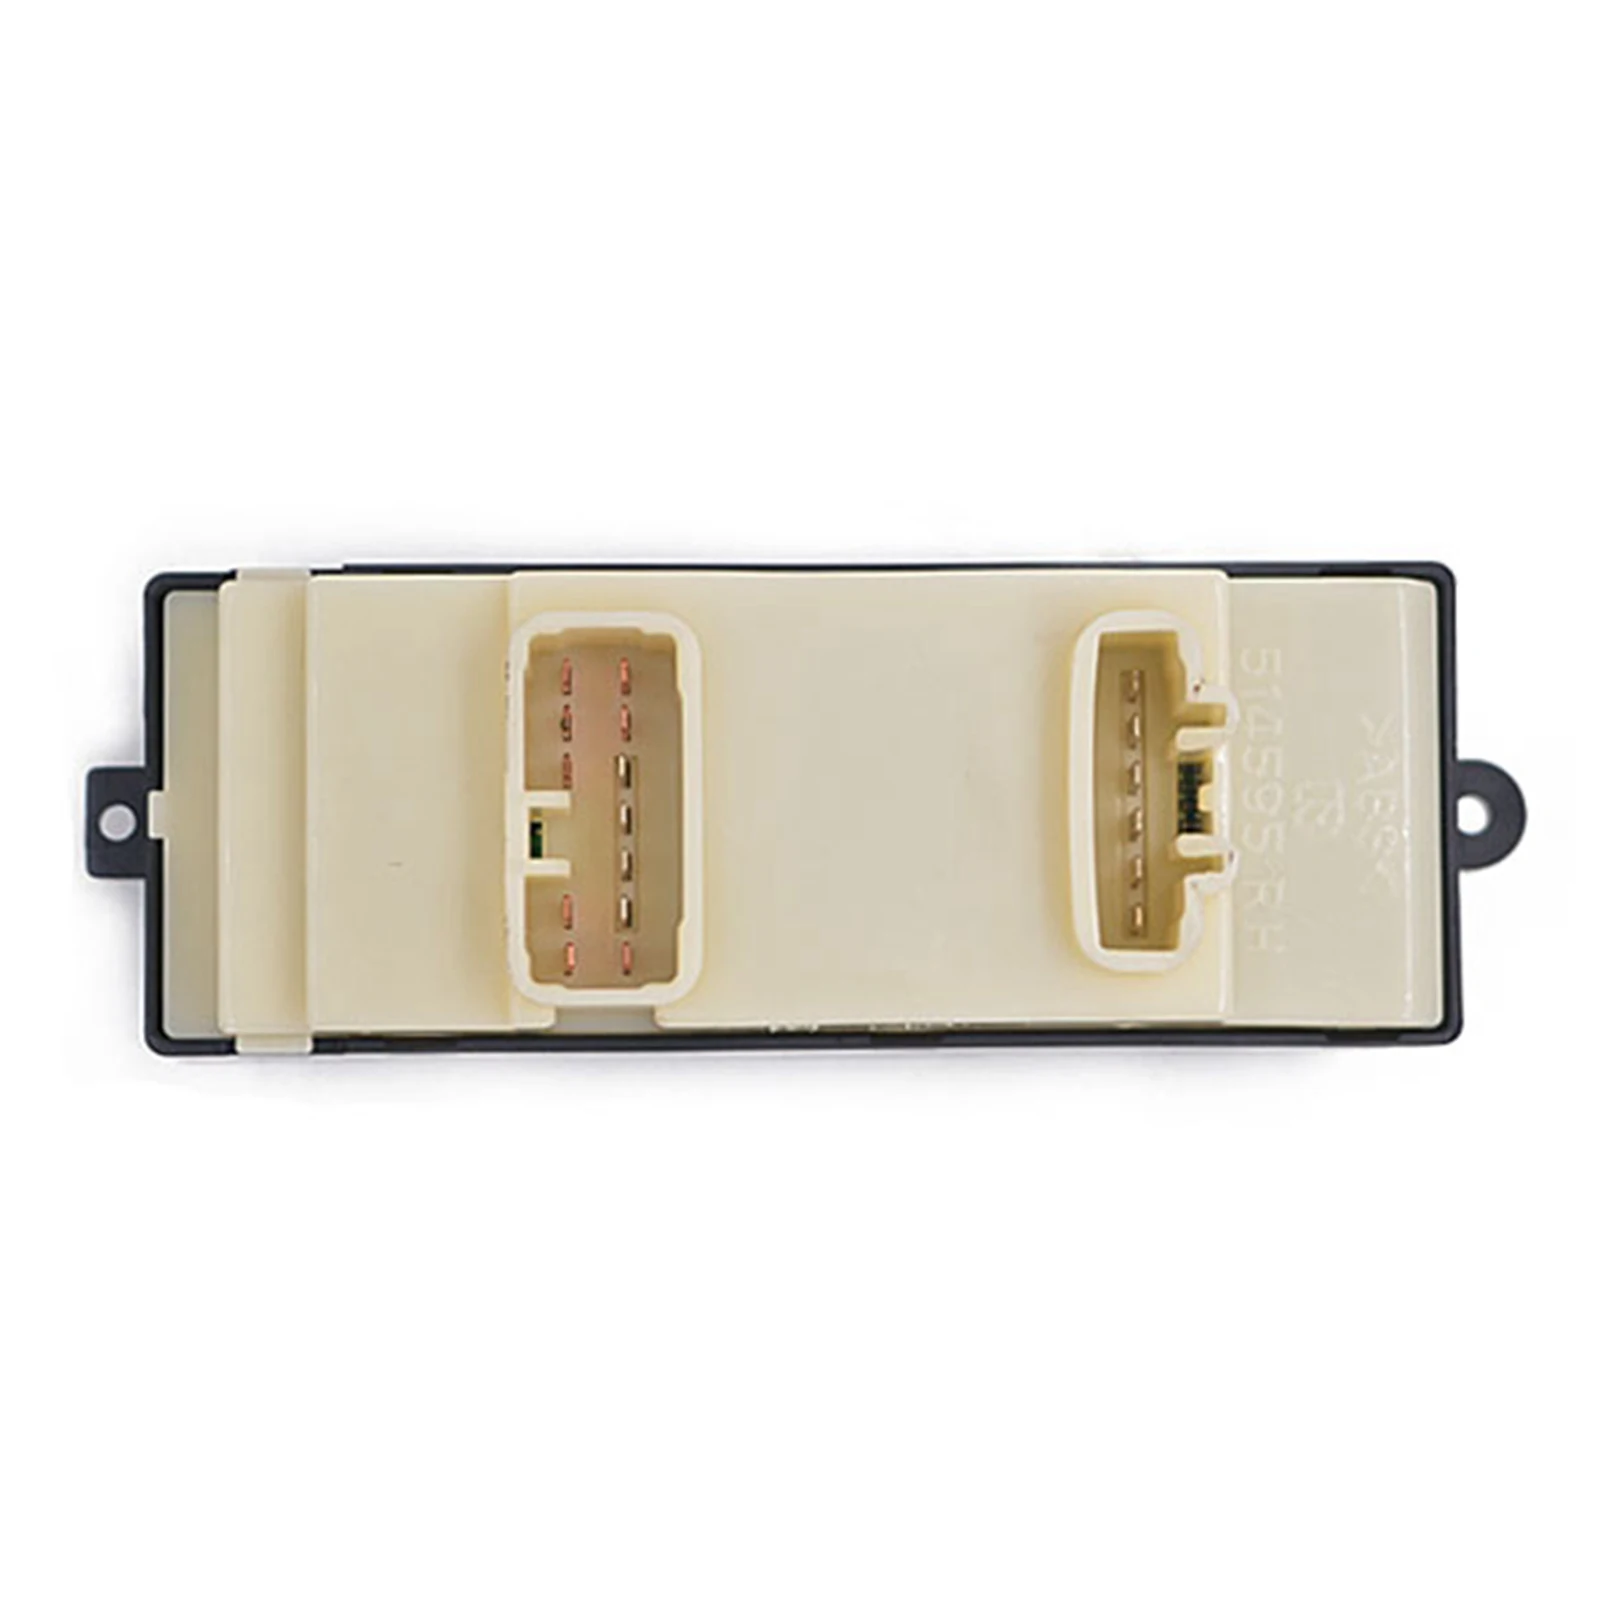 Main Door Switch for Front Door Suitable for Suzuki Escudo 2001 84820 97410